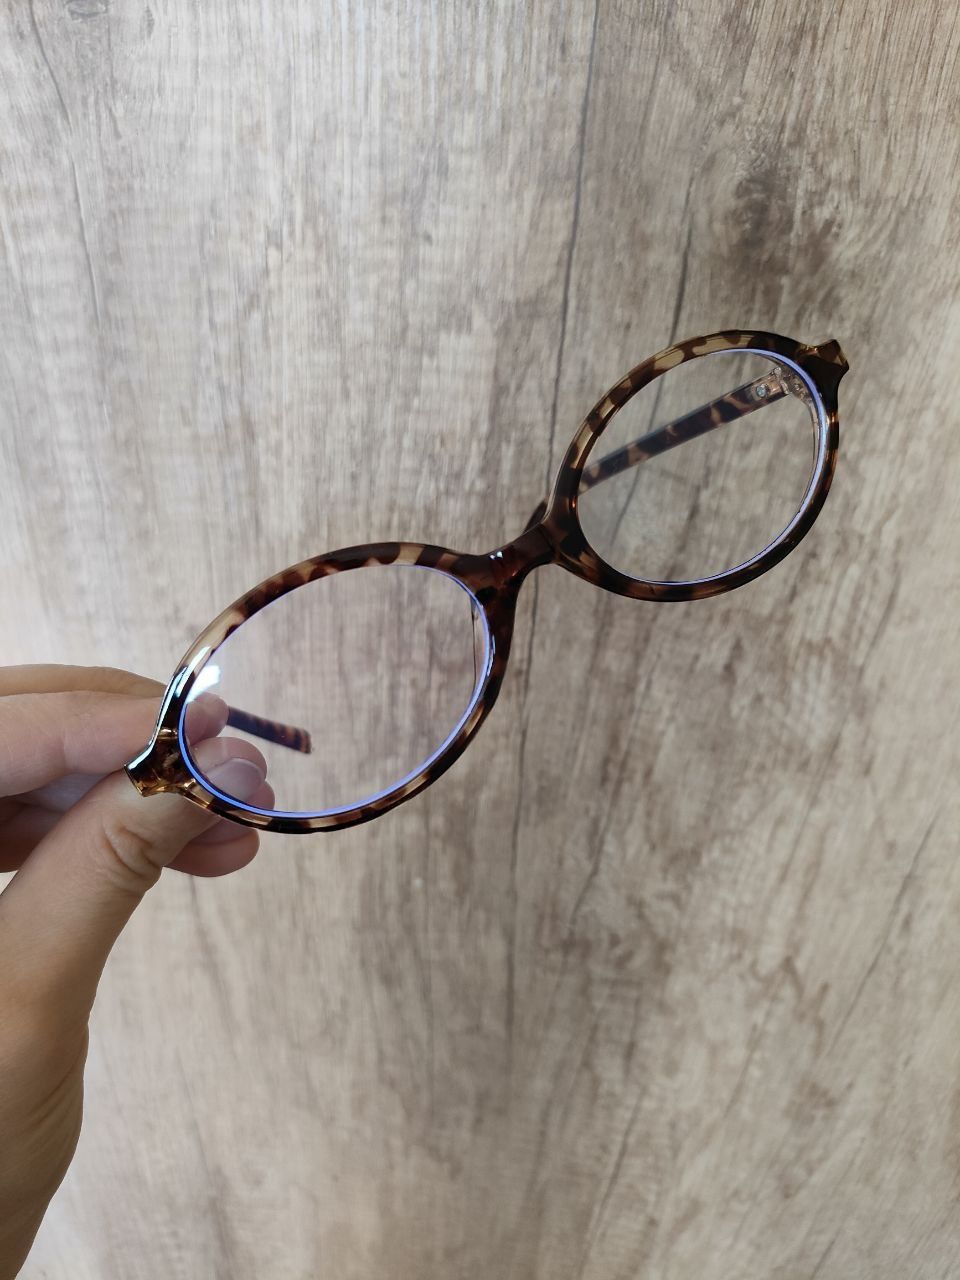 Оправа для очков, окуляри  для чтения, новая модная оправа